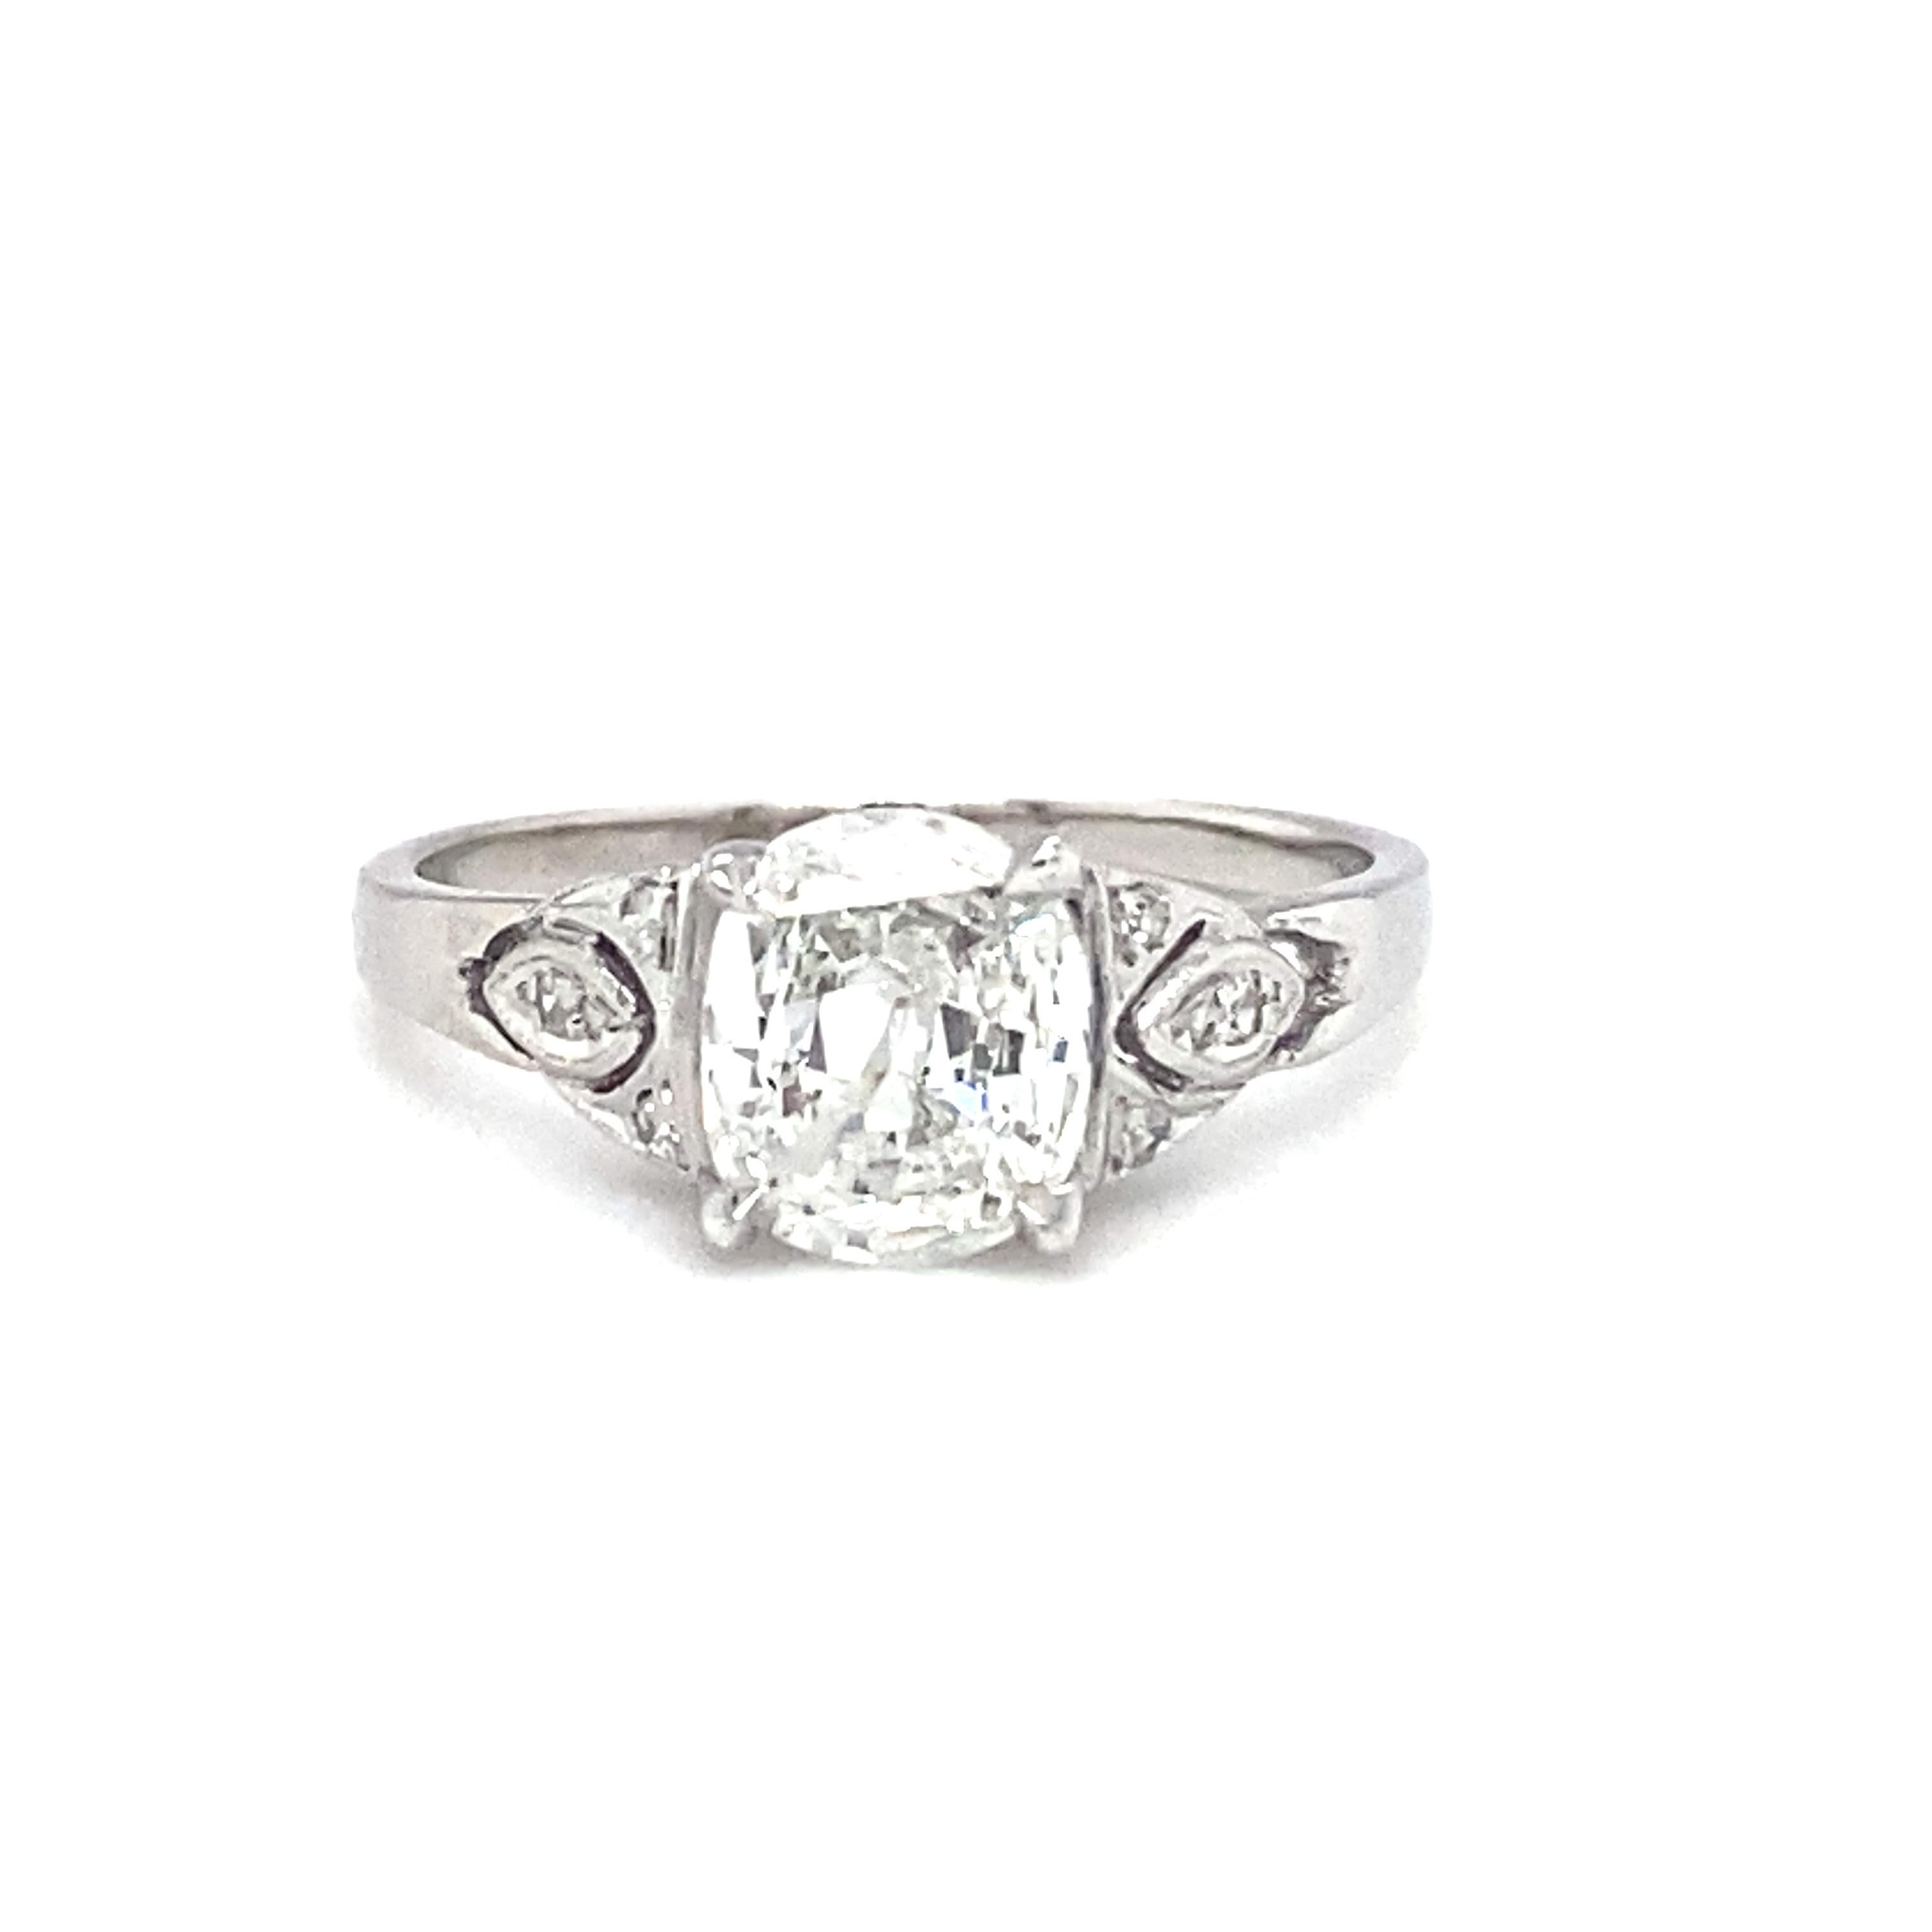 Antique Cushion Cut Circa 1920s Art Deco 1.0 Carat Tota Diamond Engagement Ring in Platinum